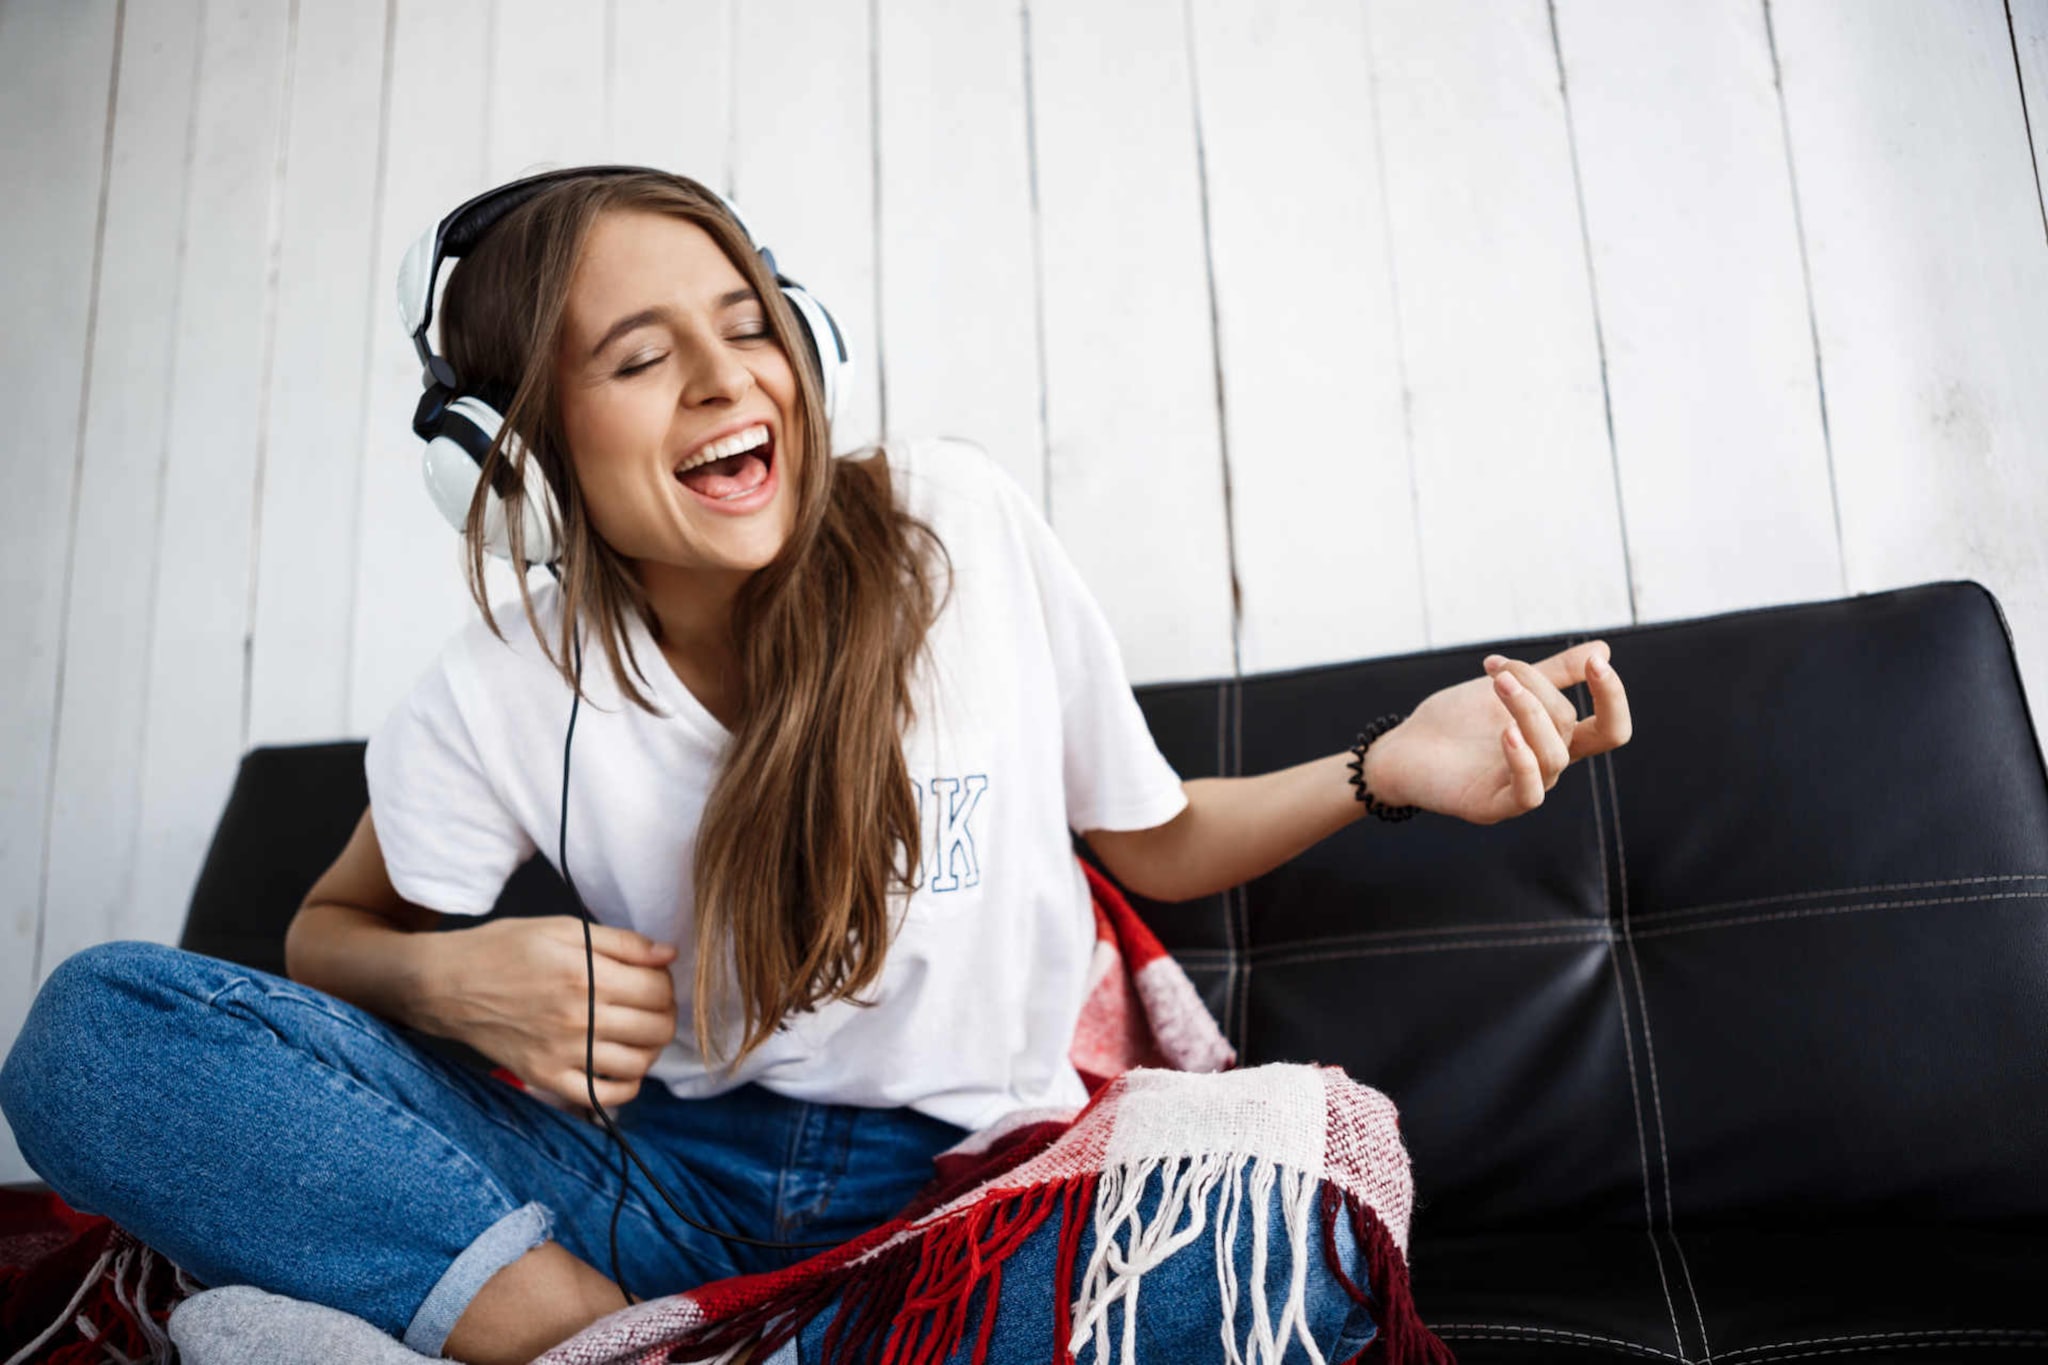 Canzoni allegre: foto di ragazza sorridente che ascolta musica